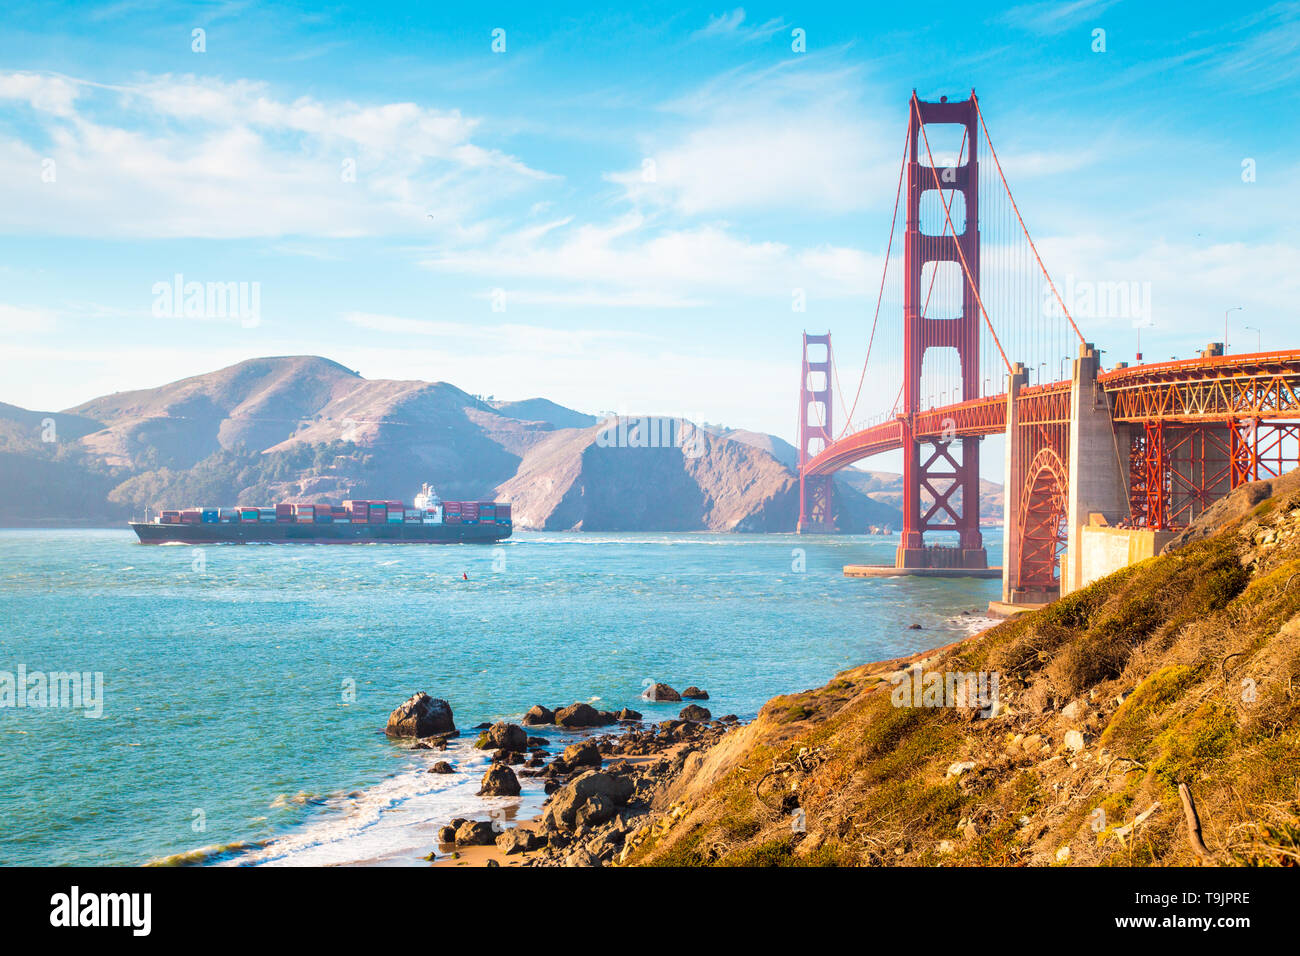 Vista clásica del famoso Golden Gate Bridge con un carguero en un día soleado con el cielo azul y las nubes en verano, San Francisco, California, EE.UU. Foto de stock